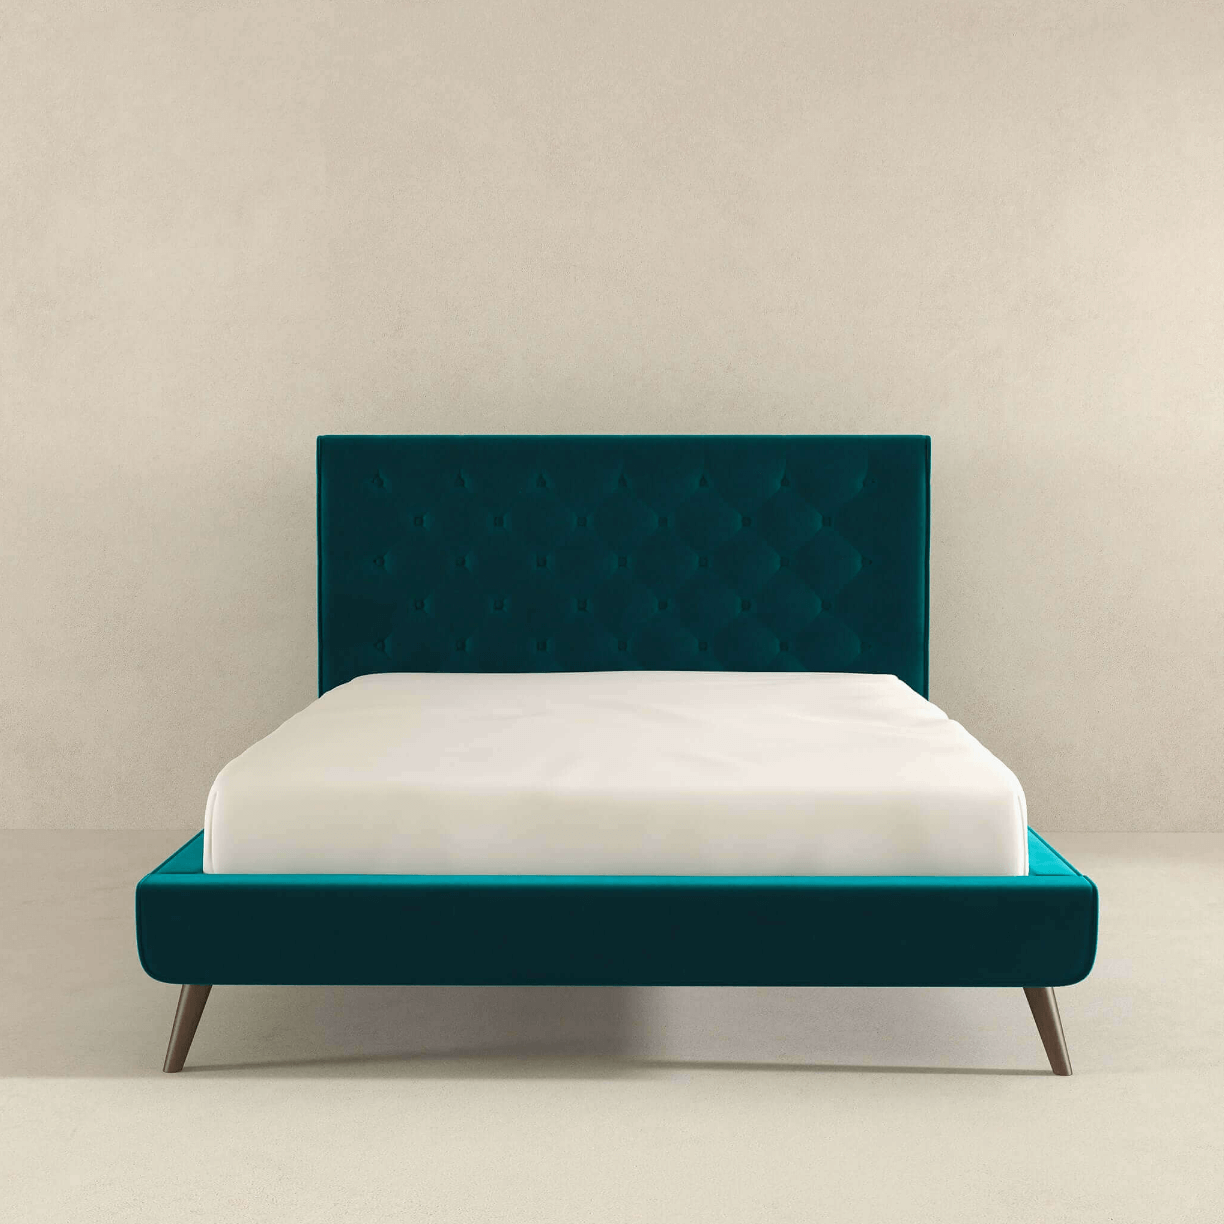 Dillon MCM Platform Bed with Button Tufted Velvet Upholstery - Revel Sofa 